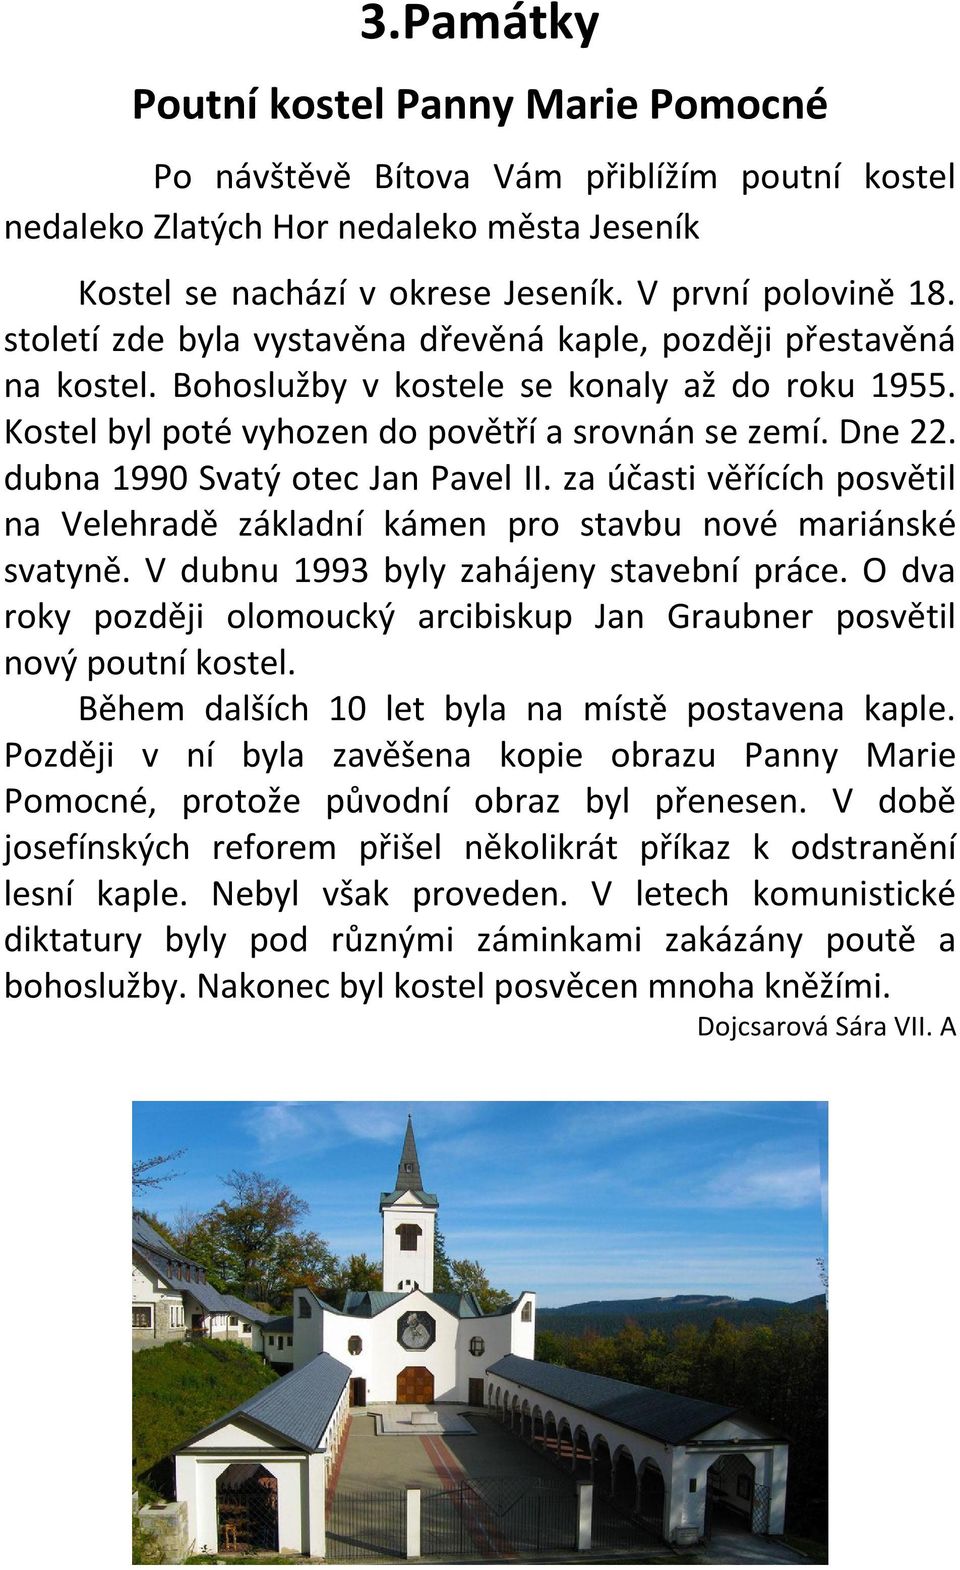 dubna 1990 Svatý otec Jan Pavel II. za účasti věřících posvětil na Velehradě základní kámen pro stavbu nové mariánské svatyně. V dubnu 1993 byly zahájeny stavební práce.